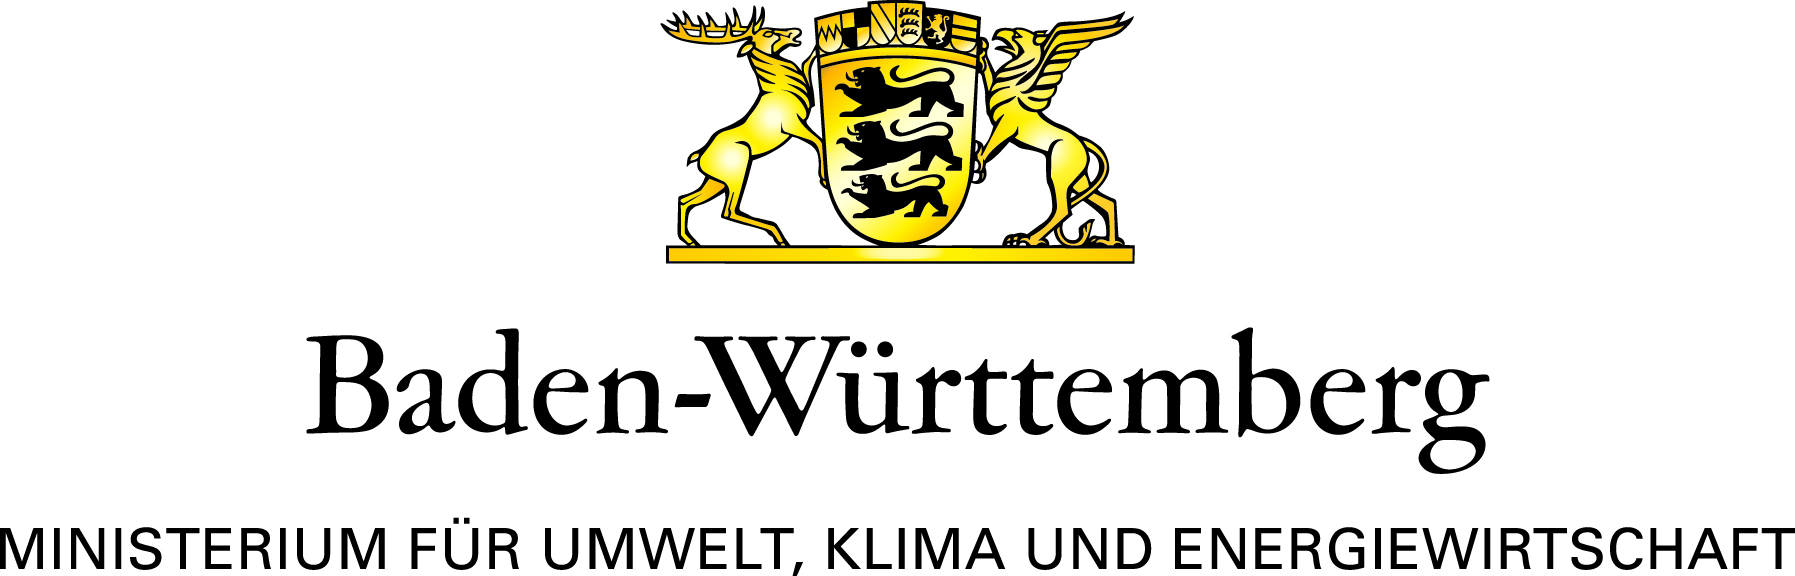 Wappen von Baden-Württemberg. Text: Baden-Württemberg Ministerium für Umwelt, Klima und Energiewirtschaft